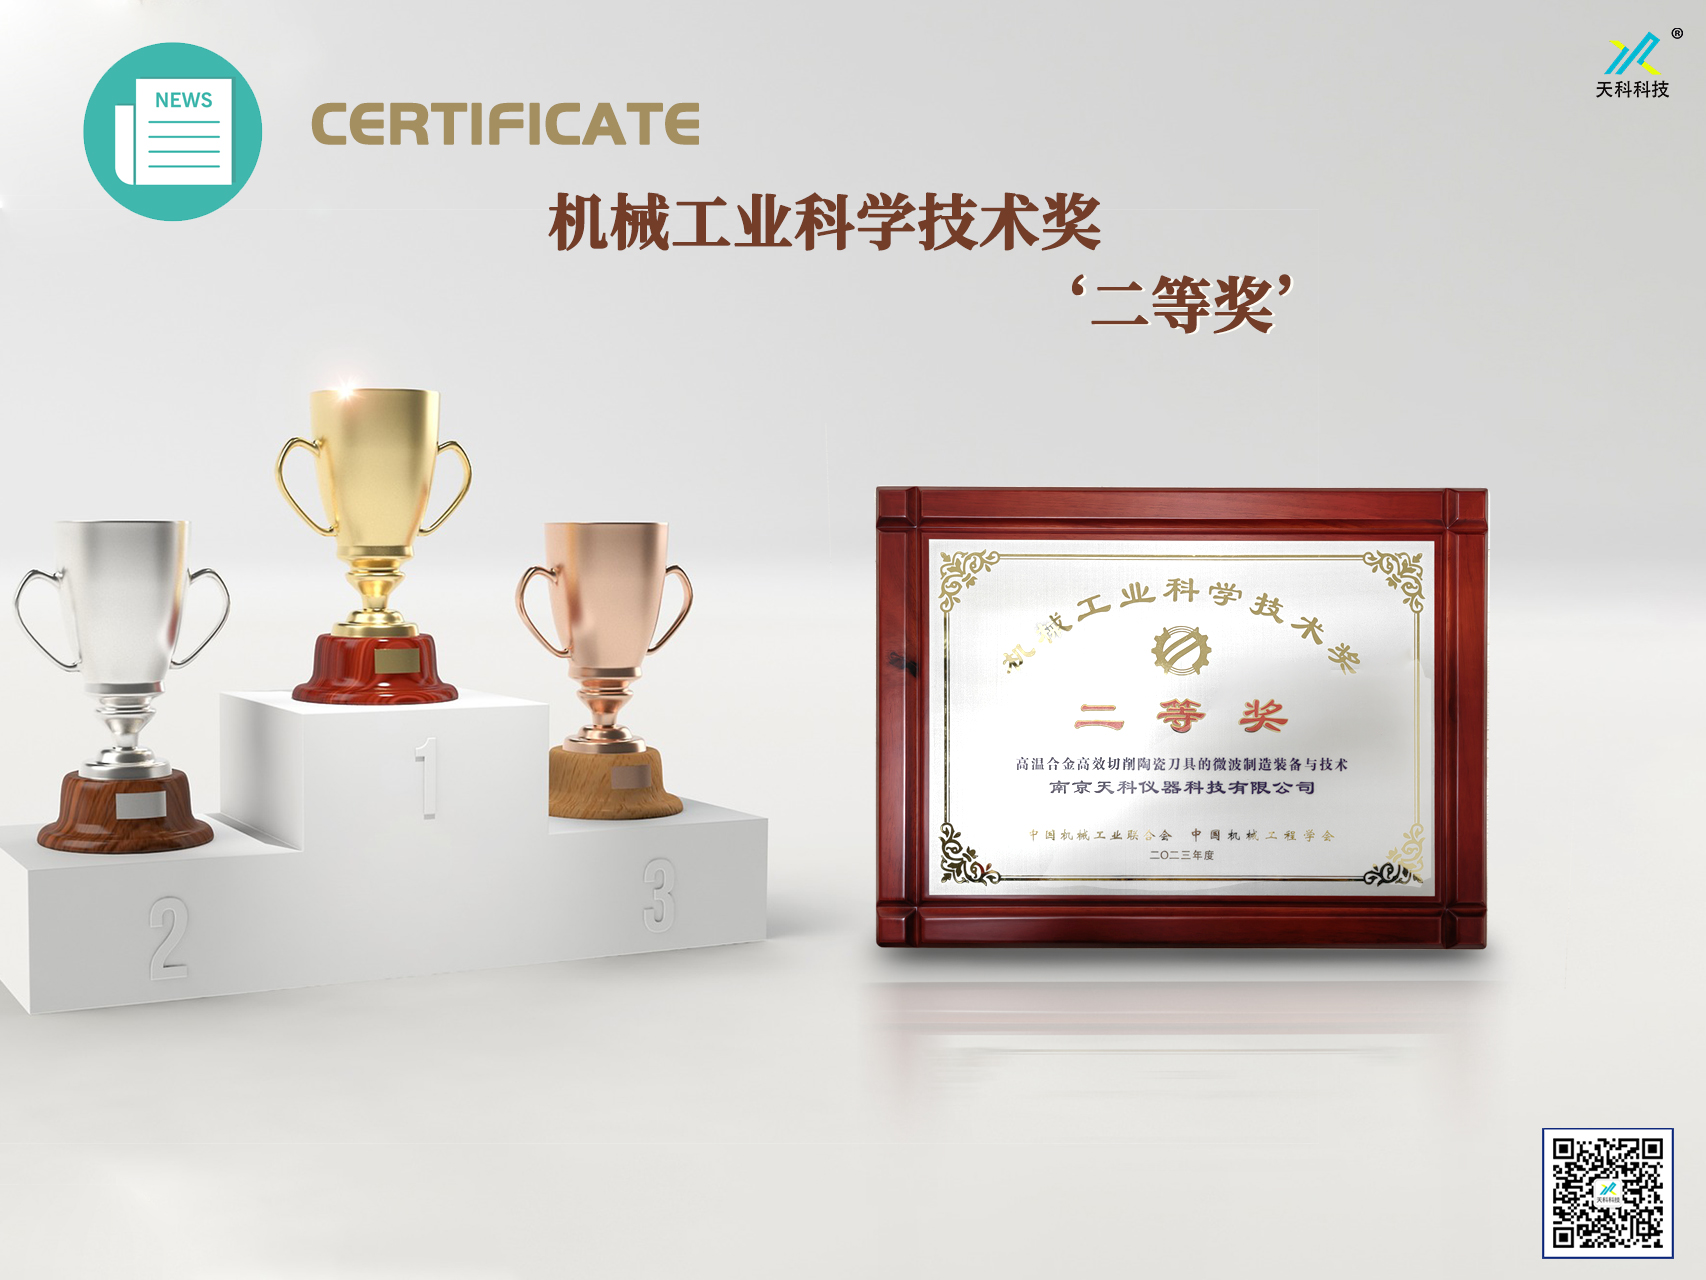 南京天科榮獲機械工業科學技術獎‘二等獎’殊榮